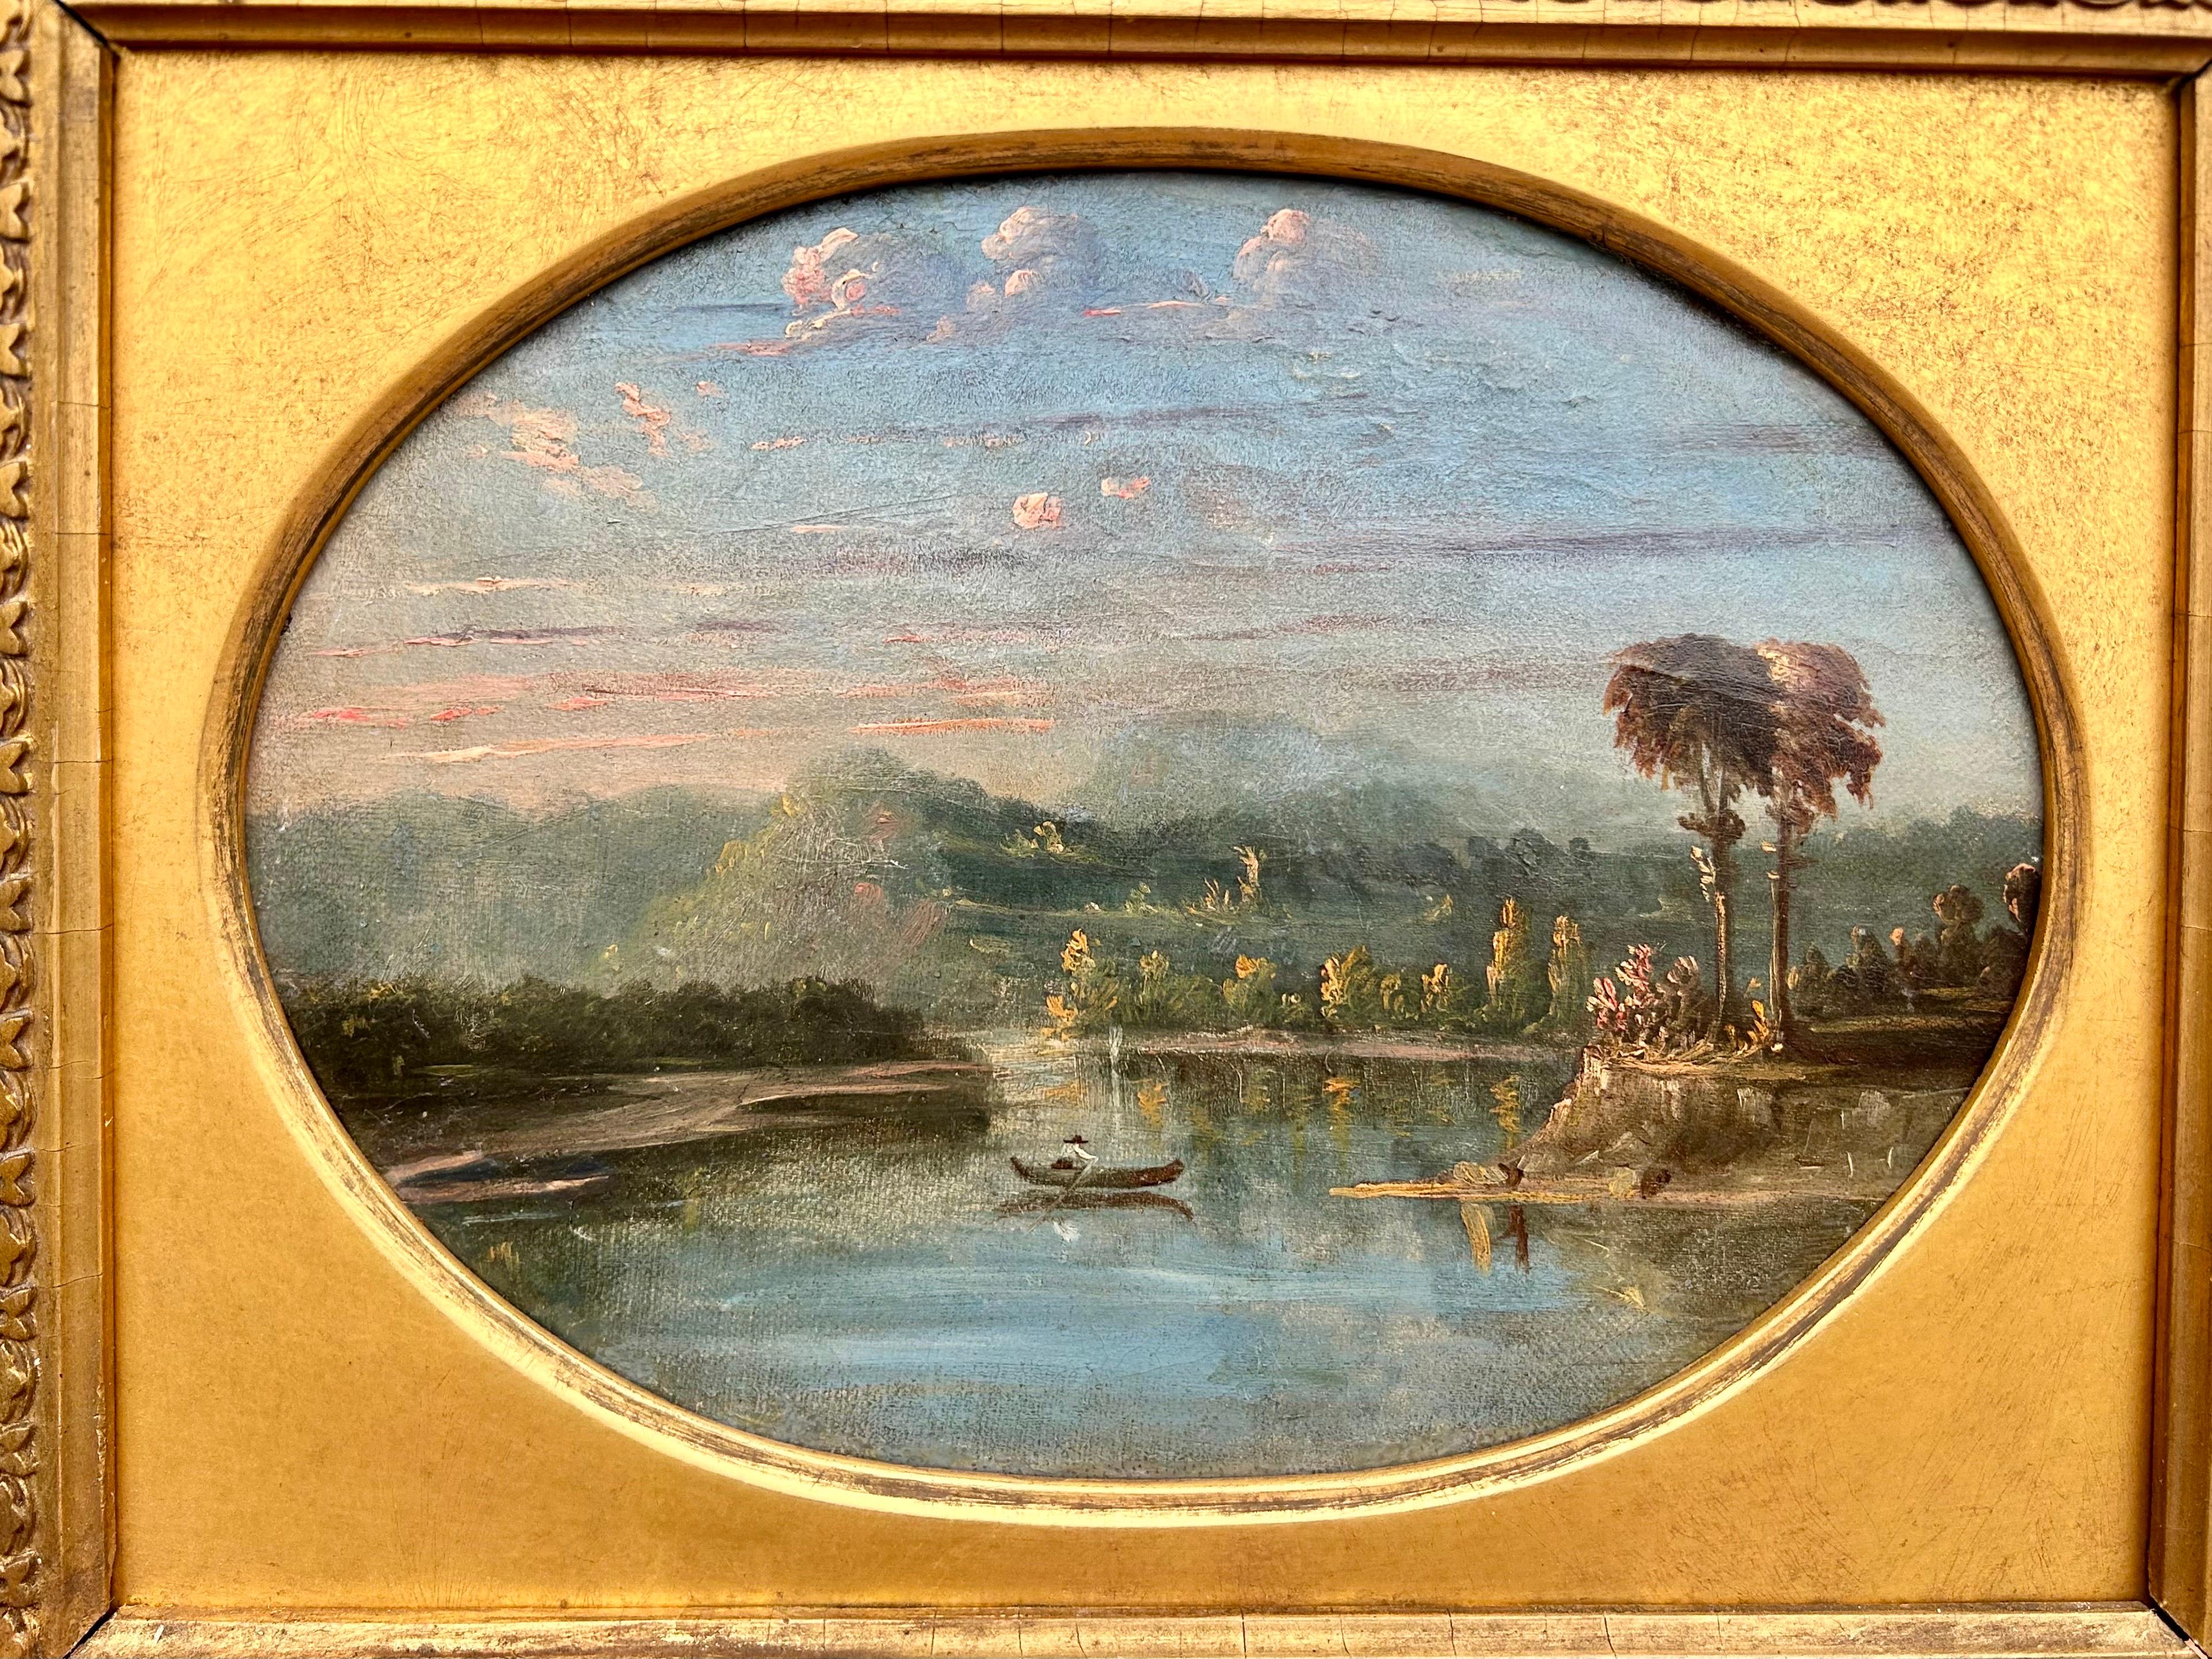 Südstaatliche Landschaft, Ölgemälde der Hudson River School – Painting von Robert S. Duncanson